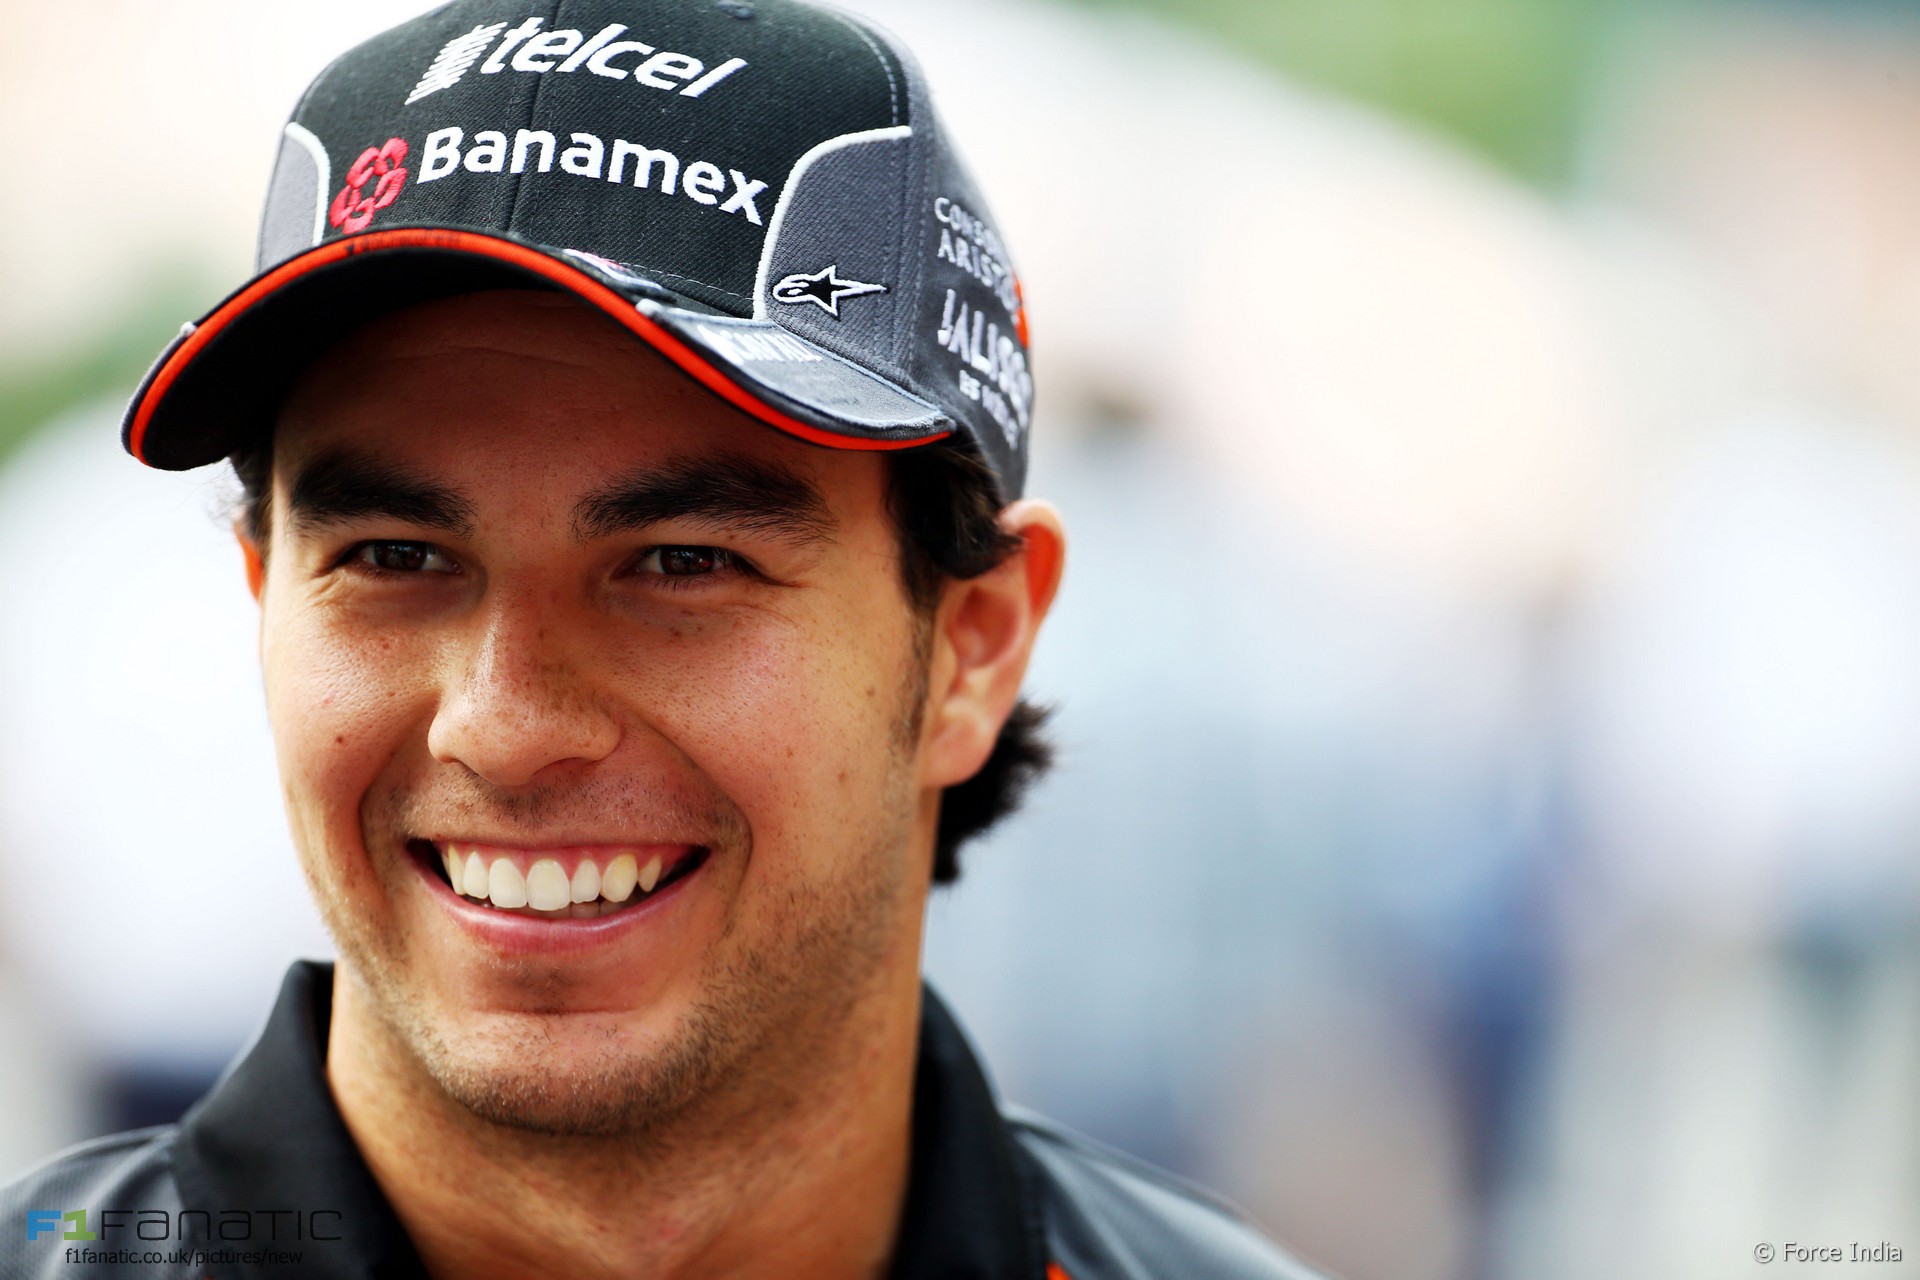 F1: Mexican driver Perez dumps sponsor over tweet